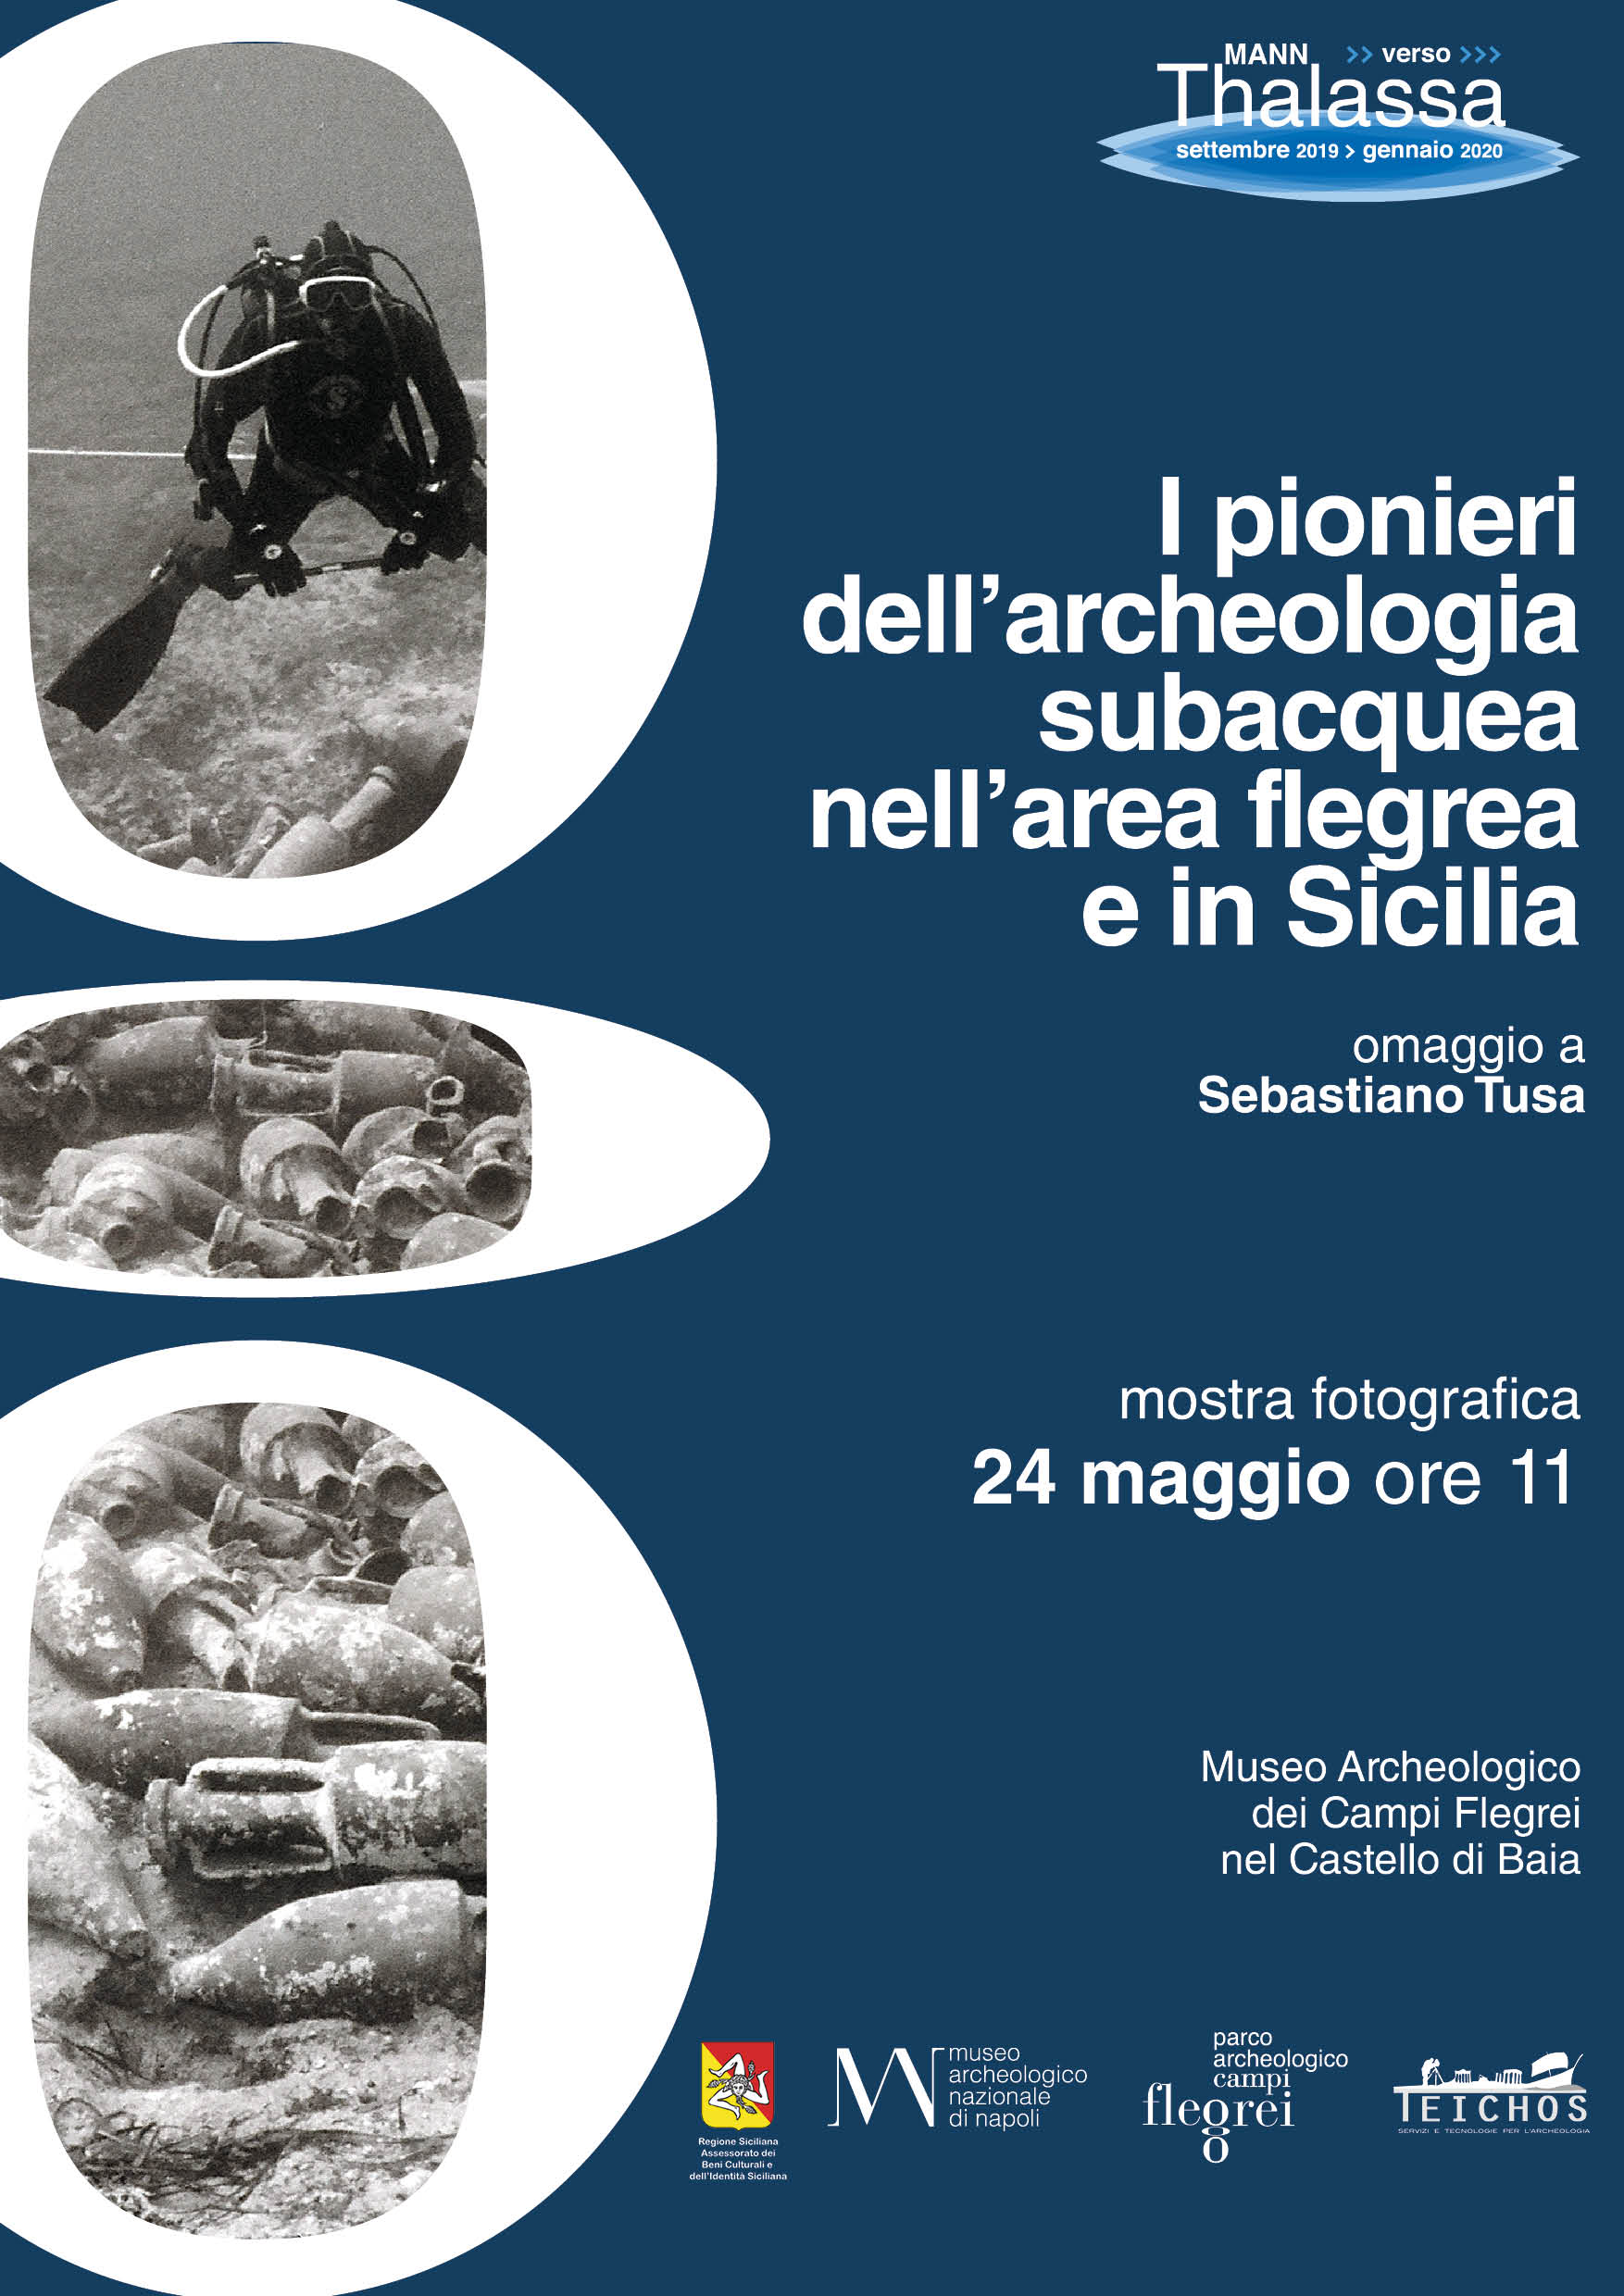 Inaugura il 24 maggio a Baia la mostra fotografica “I pionieri dell’archeologia subacquea nell’area Flegrea ed in Sicilia”